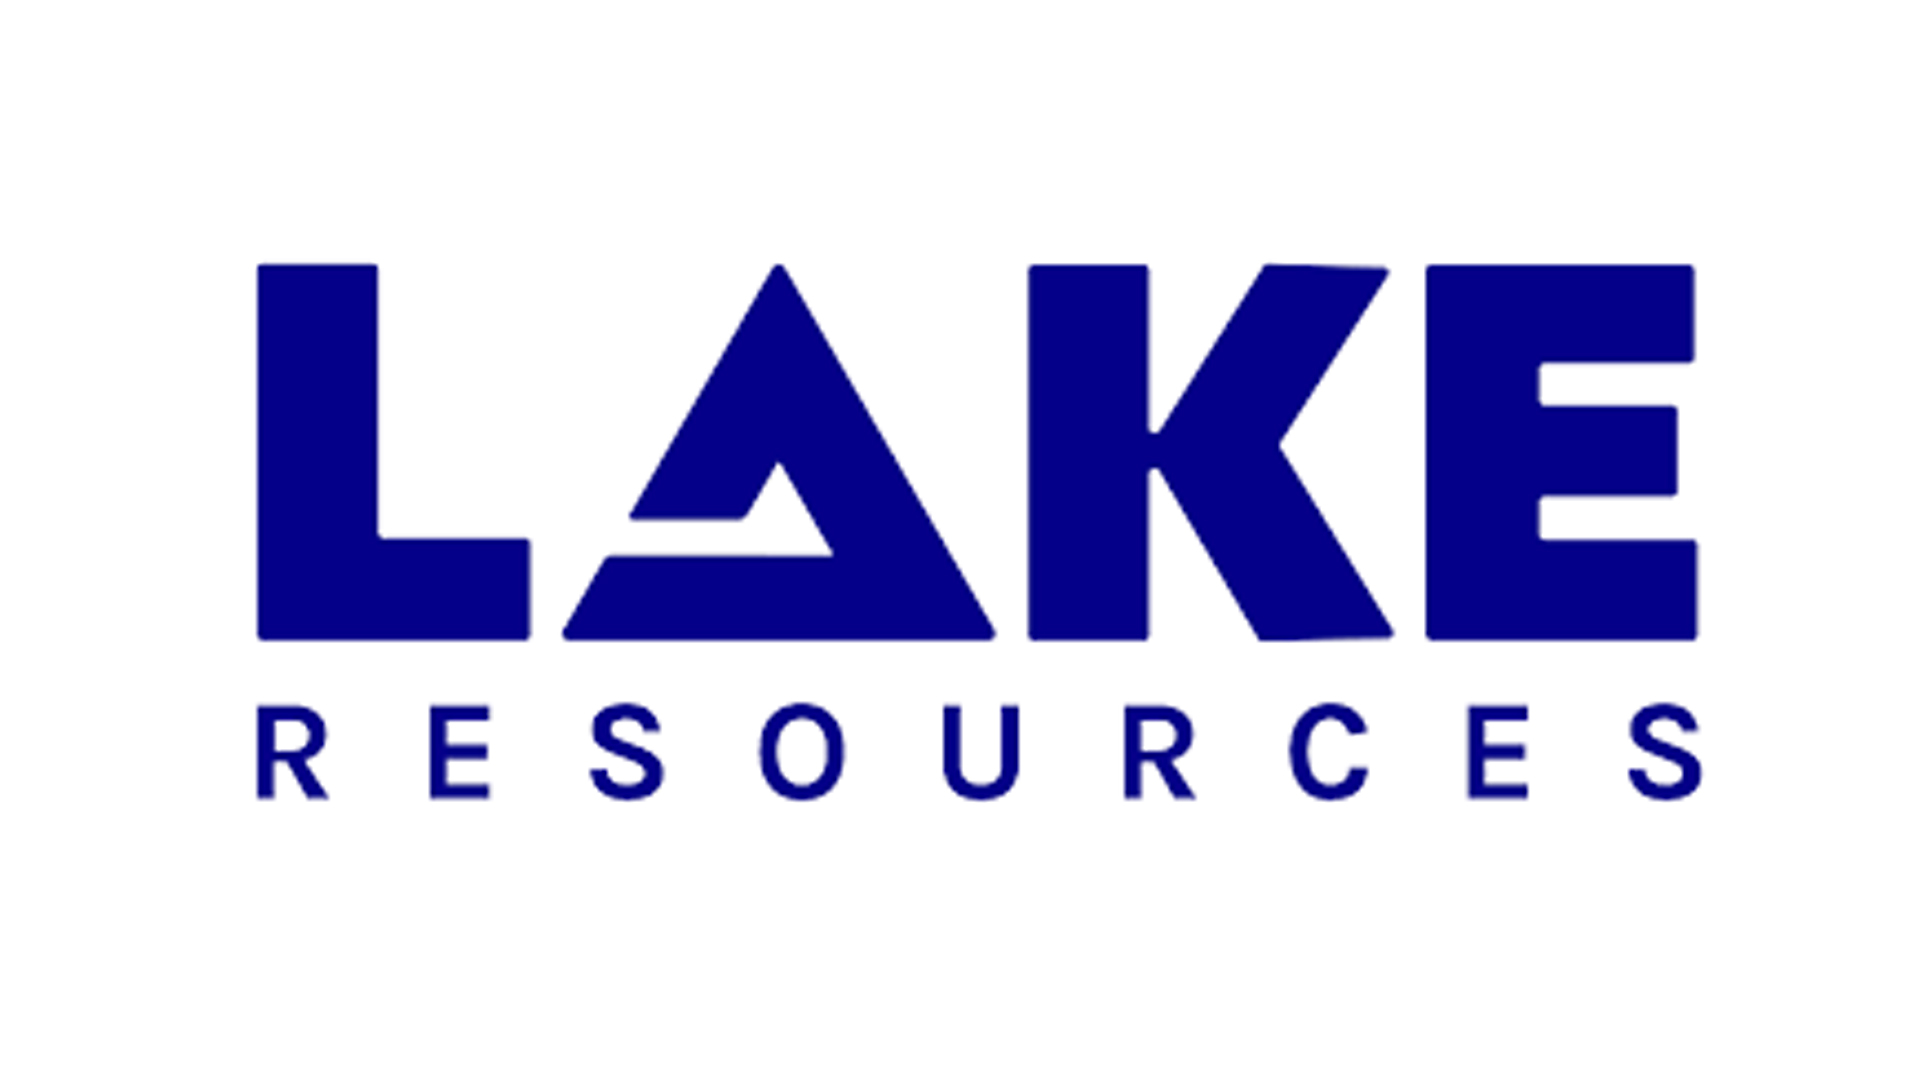 Lake Resources